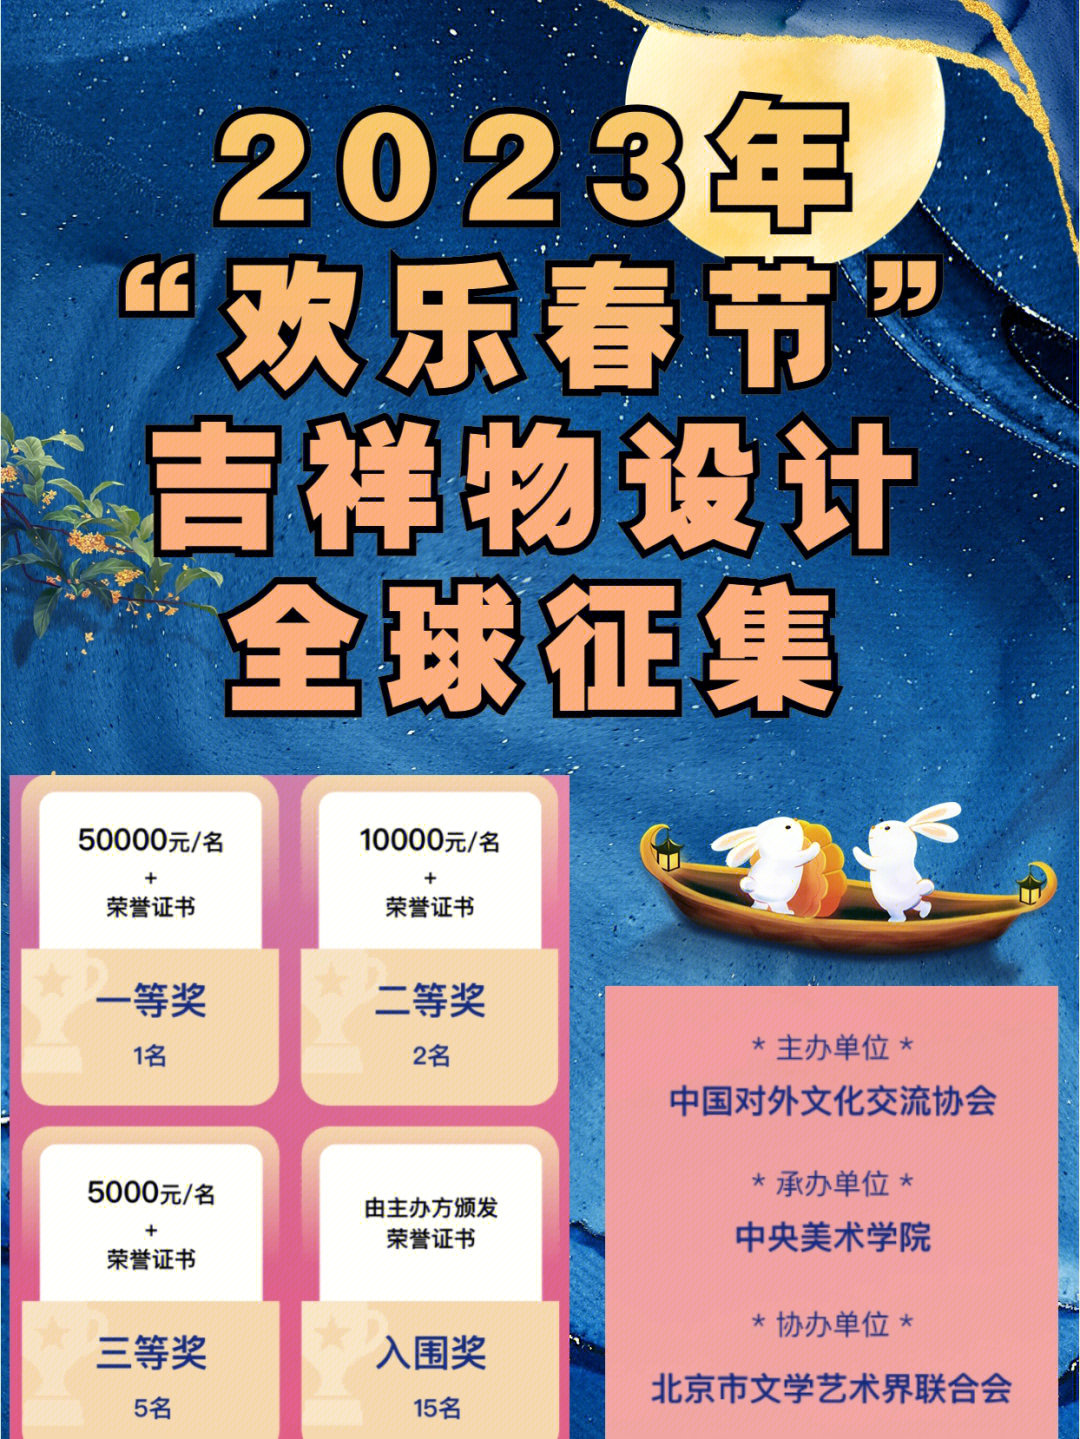 最新30万元征集广告语_通州旅游形象口号征集揭晓_